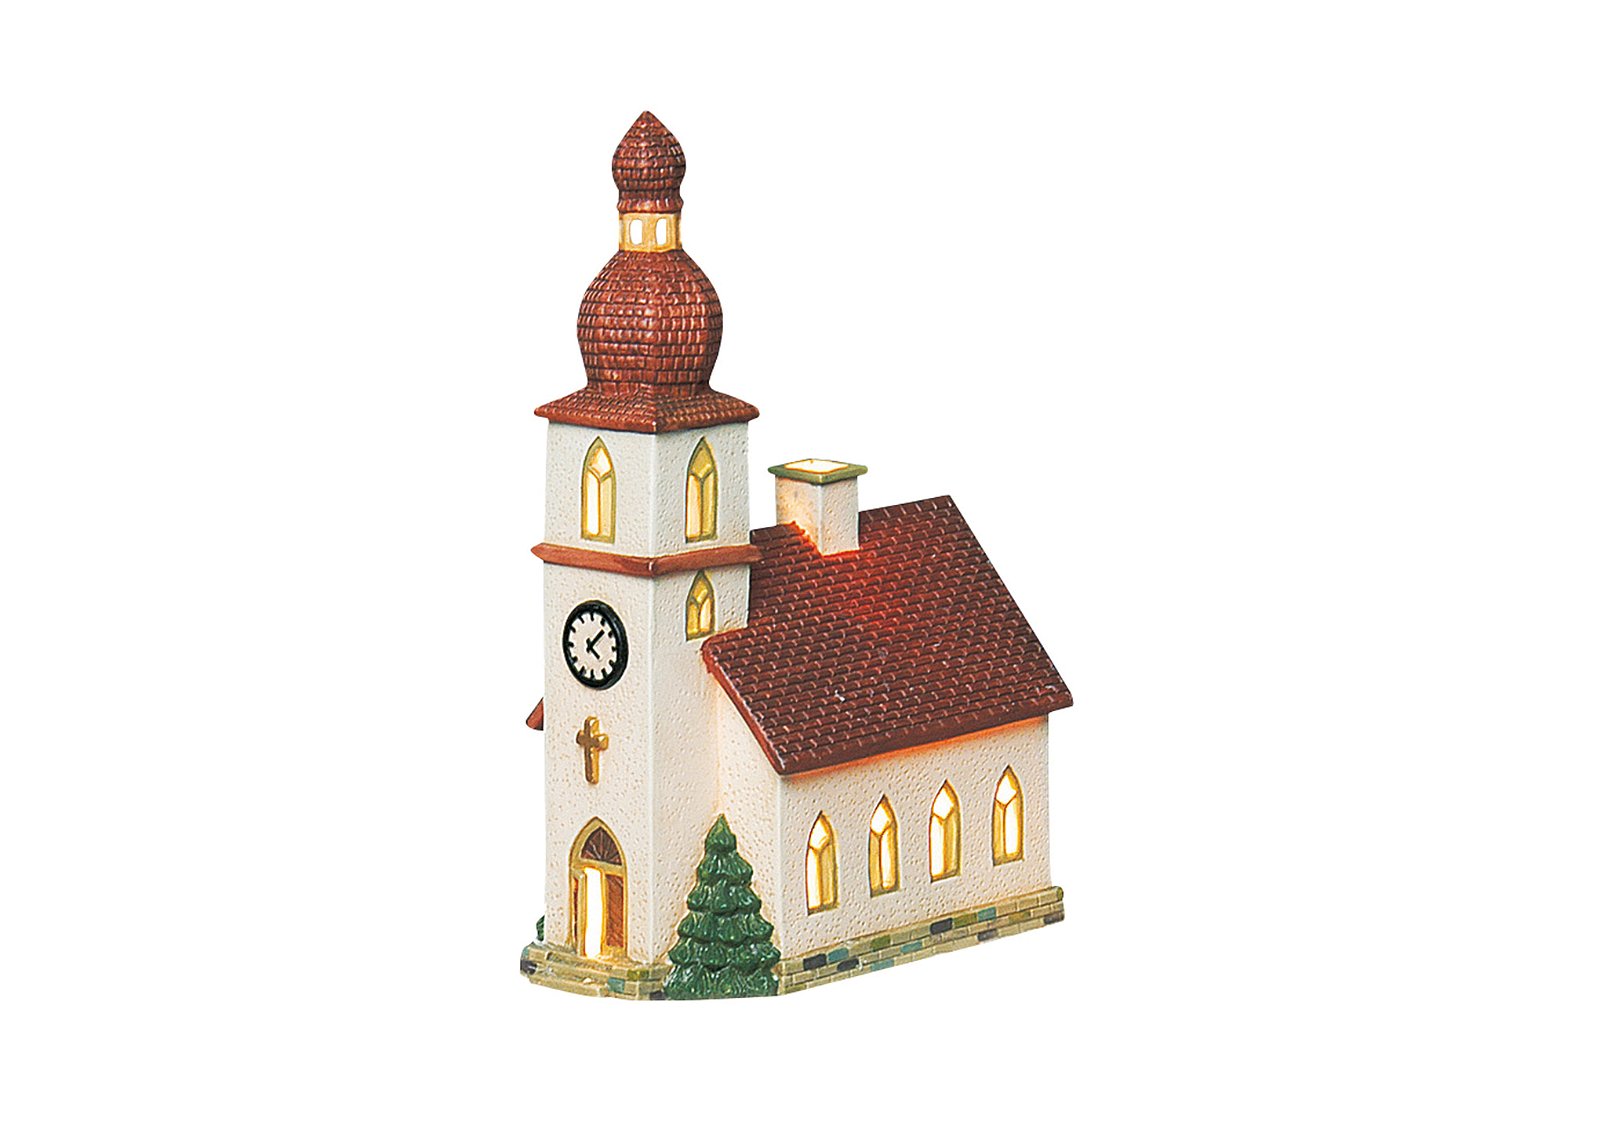 Farol de la iglesia de porcelana, W14 x D8 x H21 cm